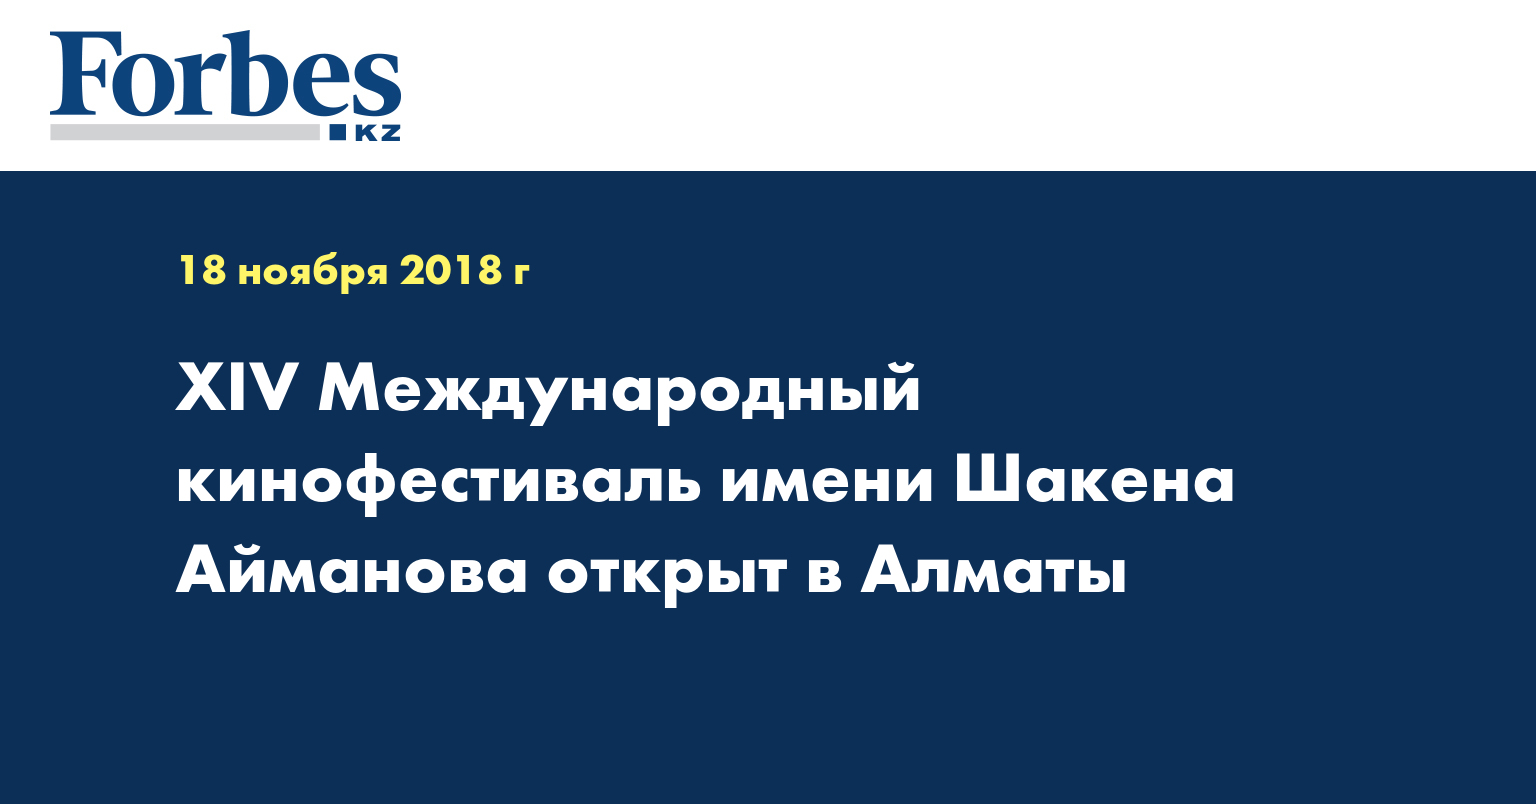 XIV Международный кинофестиваль имени Шакена Айманова открыт в Алматы